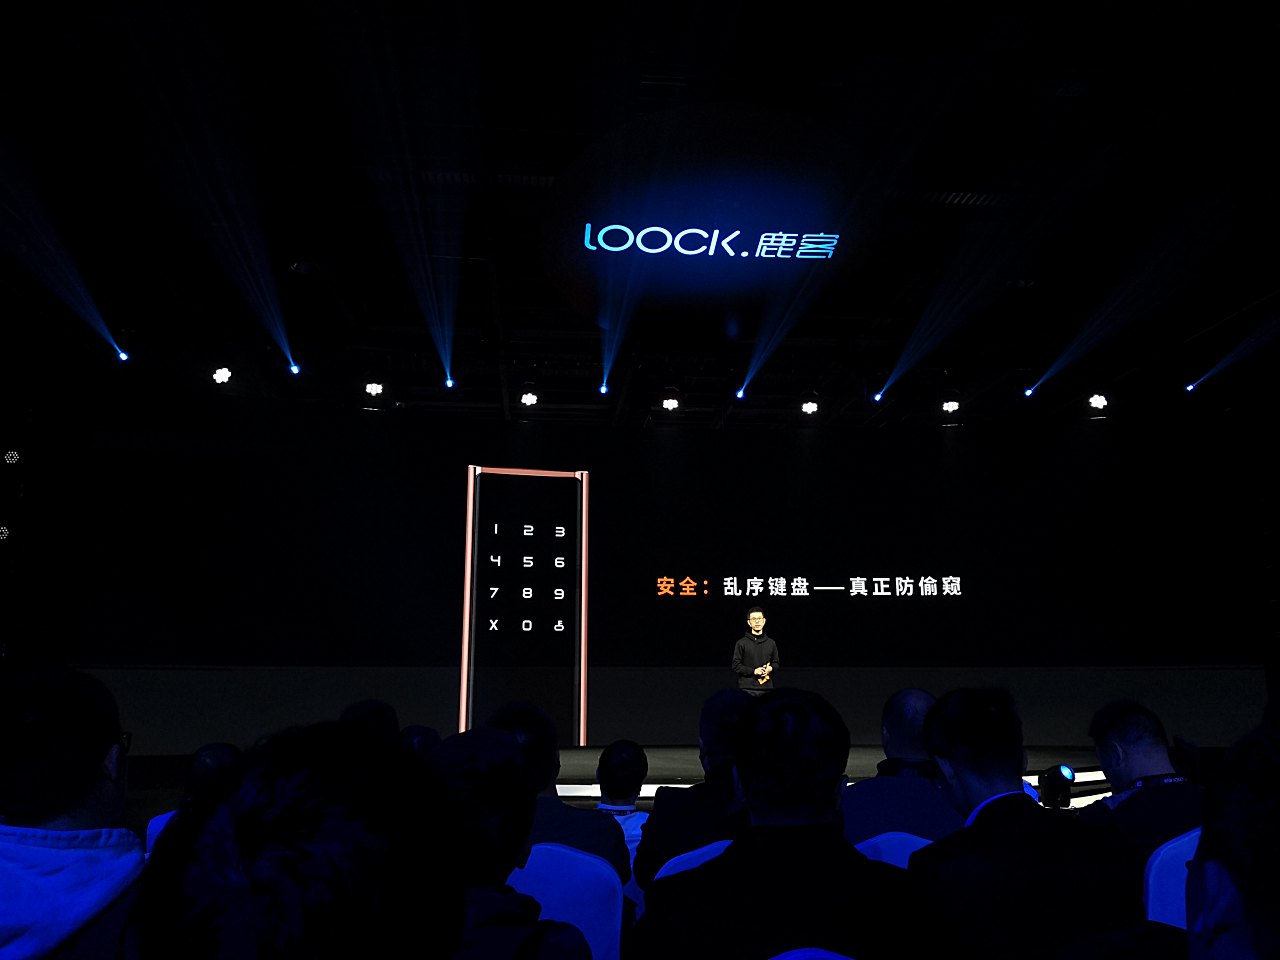 鹿客公布高档旗舰级触摸显示屏智能锁Touch2 Pro市场价5188元